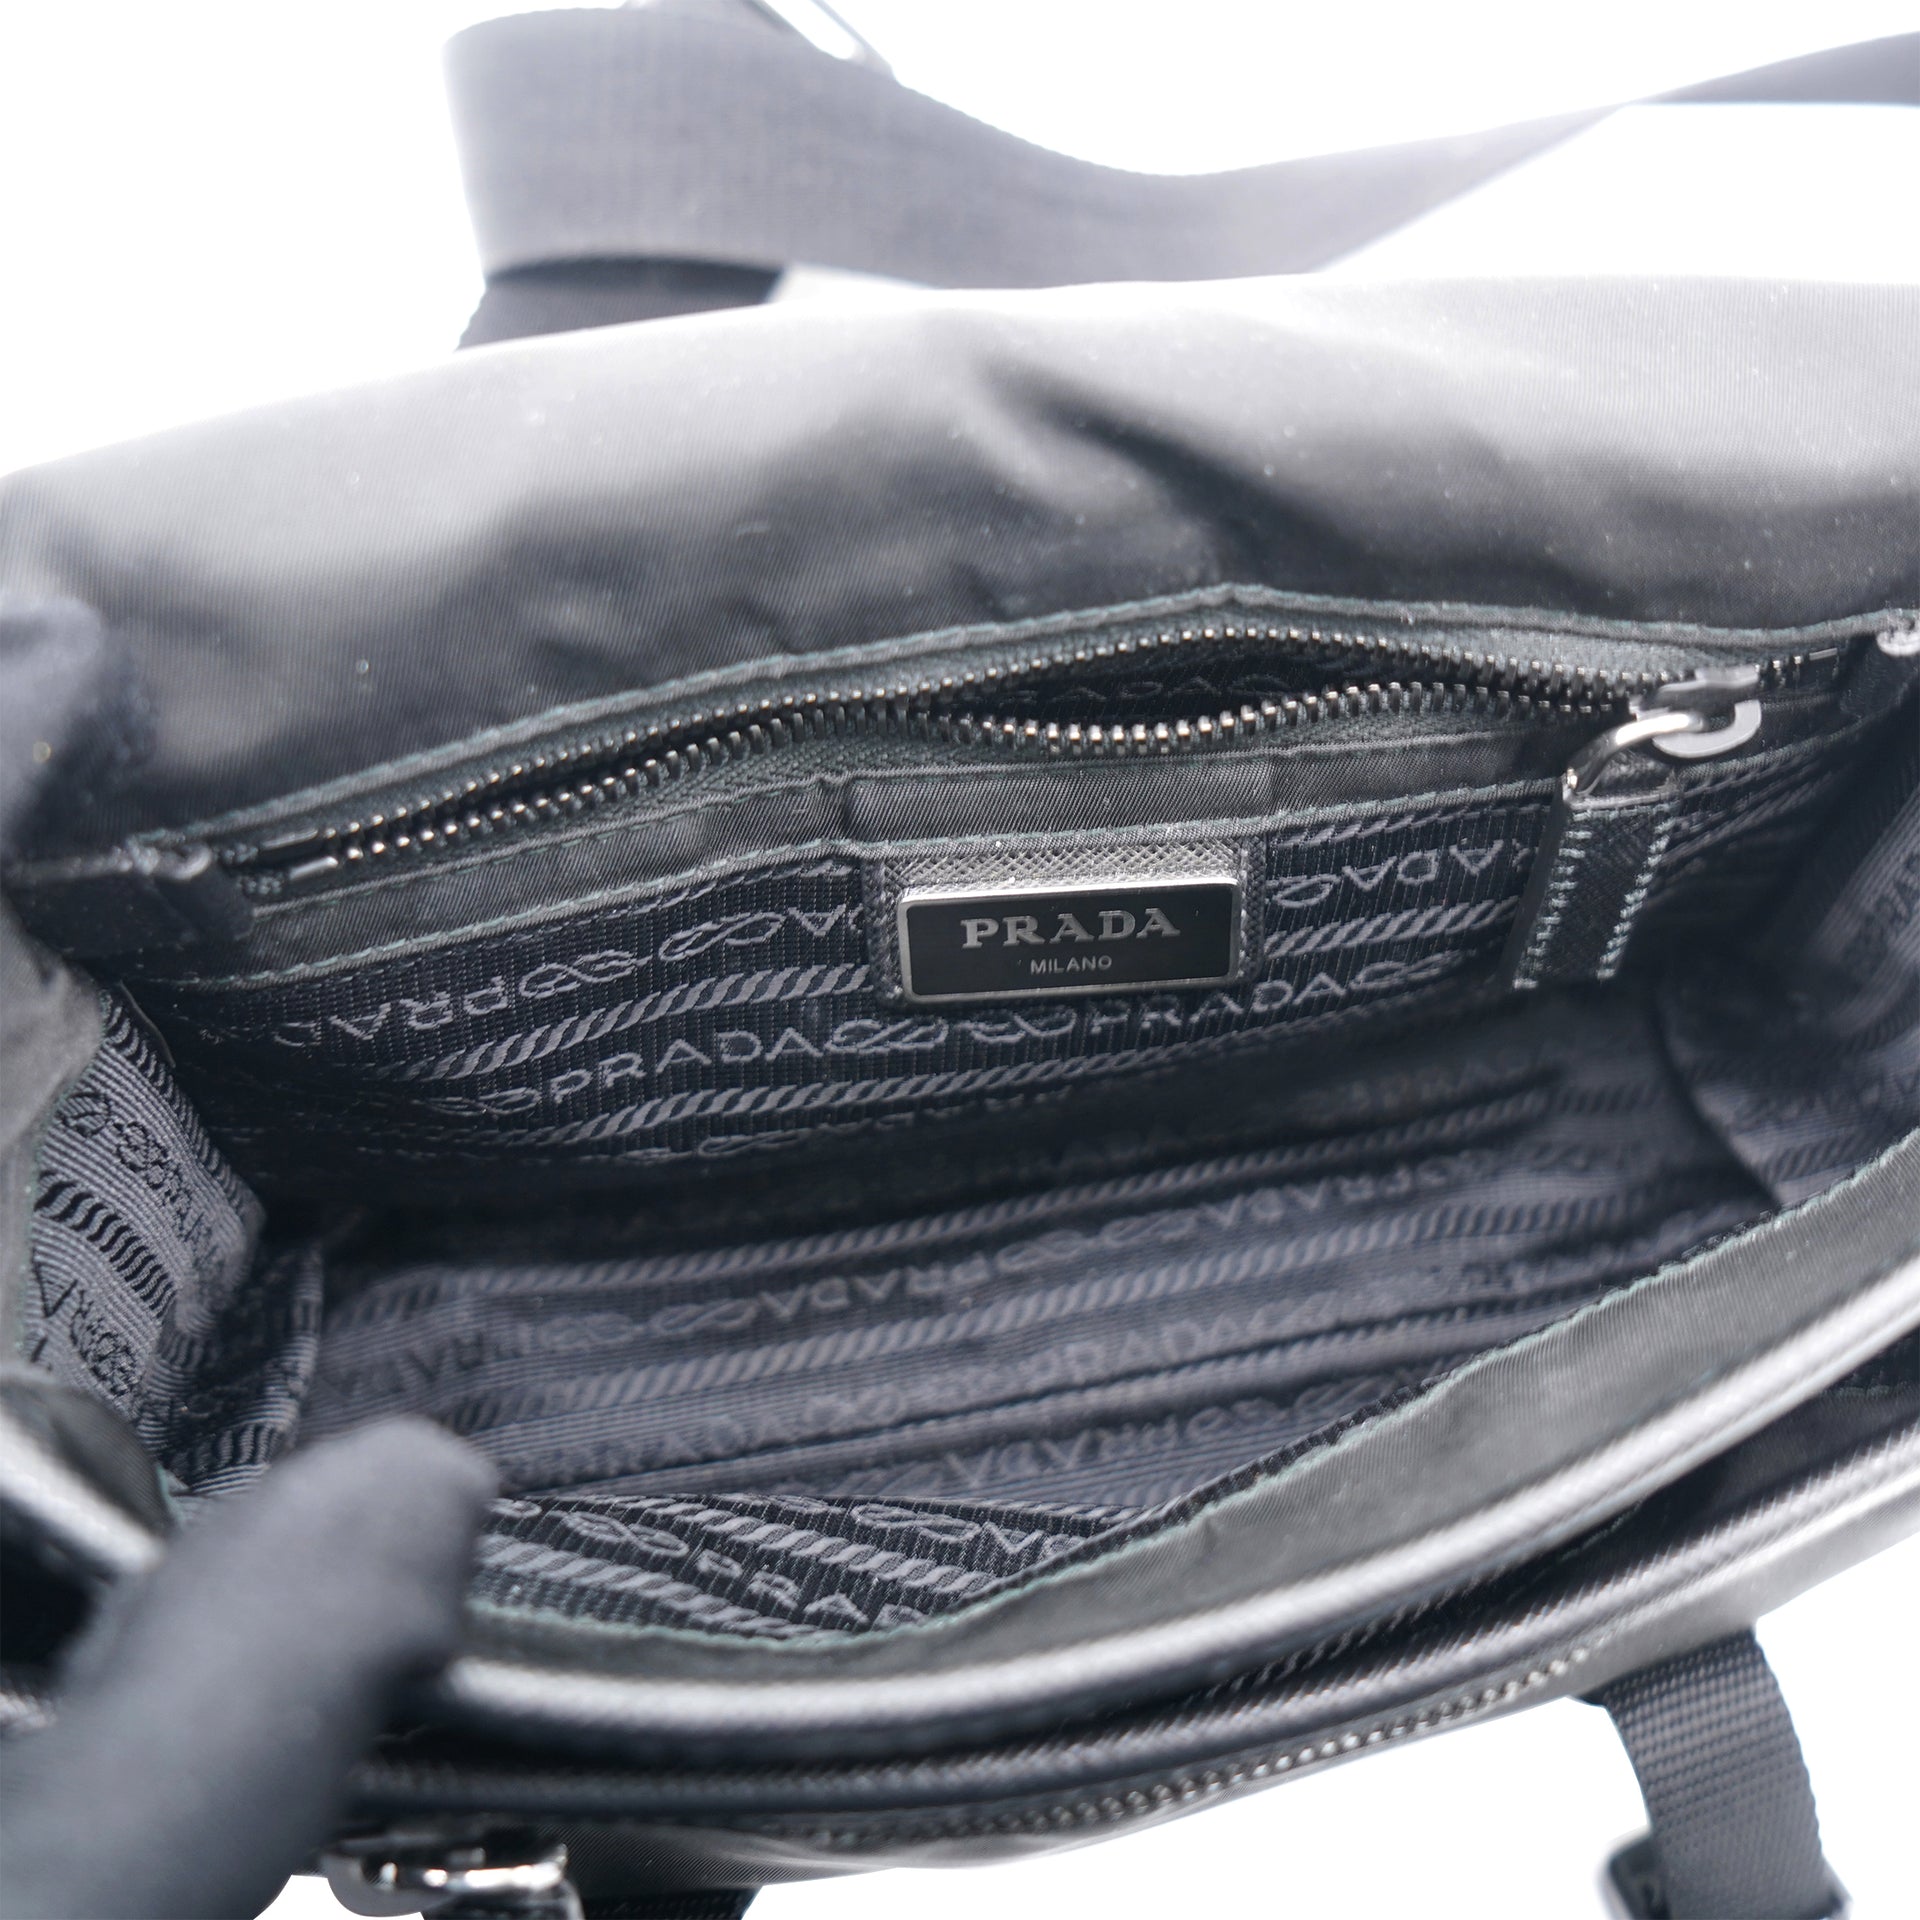 Prada Re-nylon and Saffiano leather shoulder bag